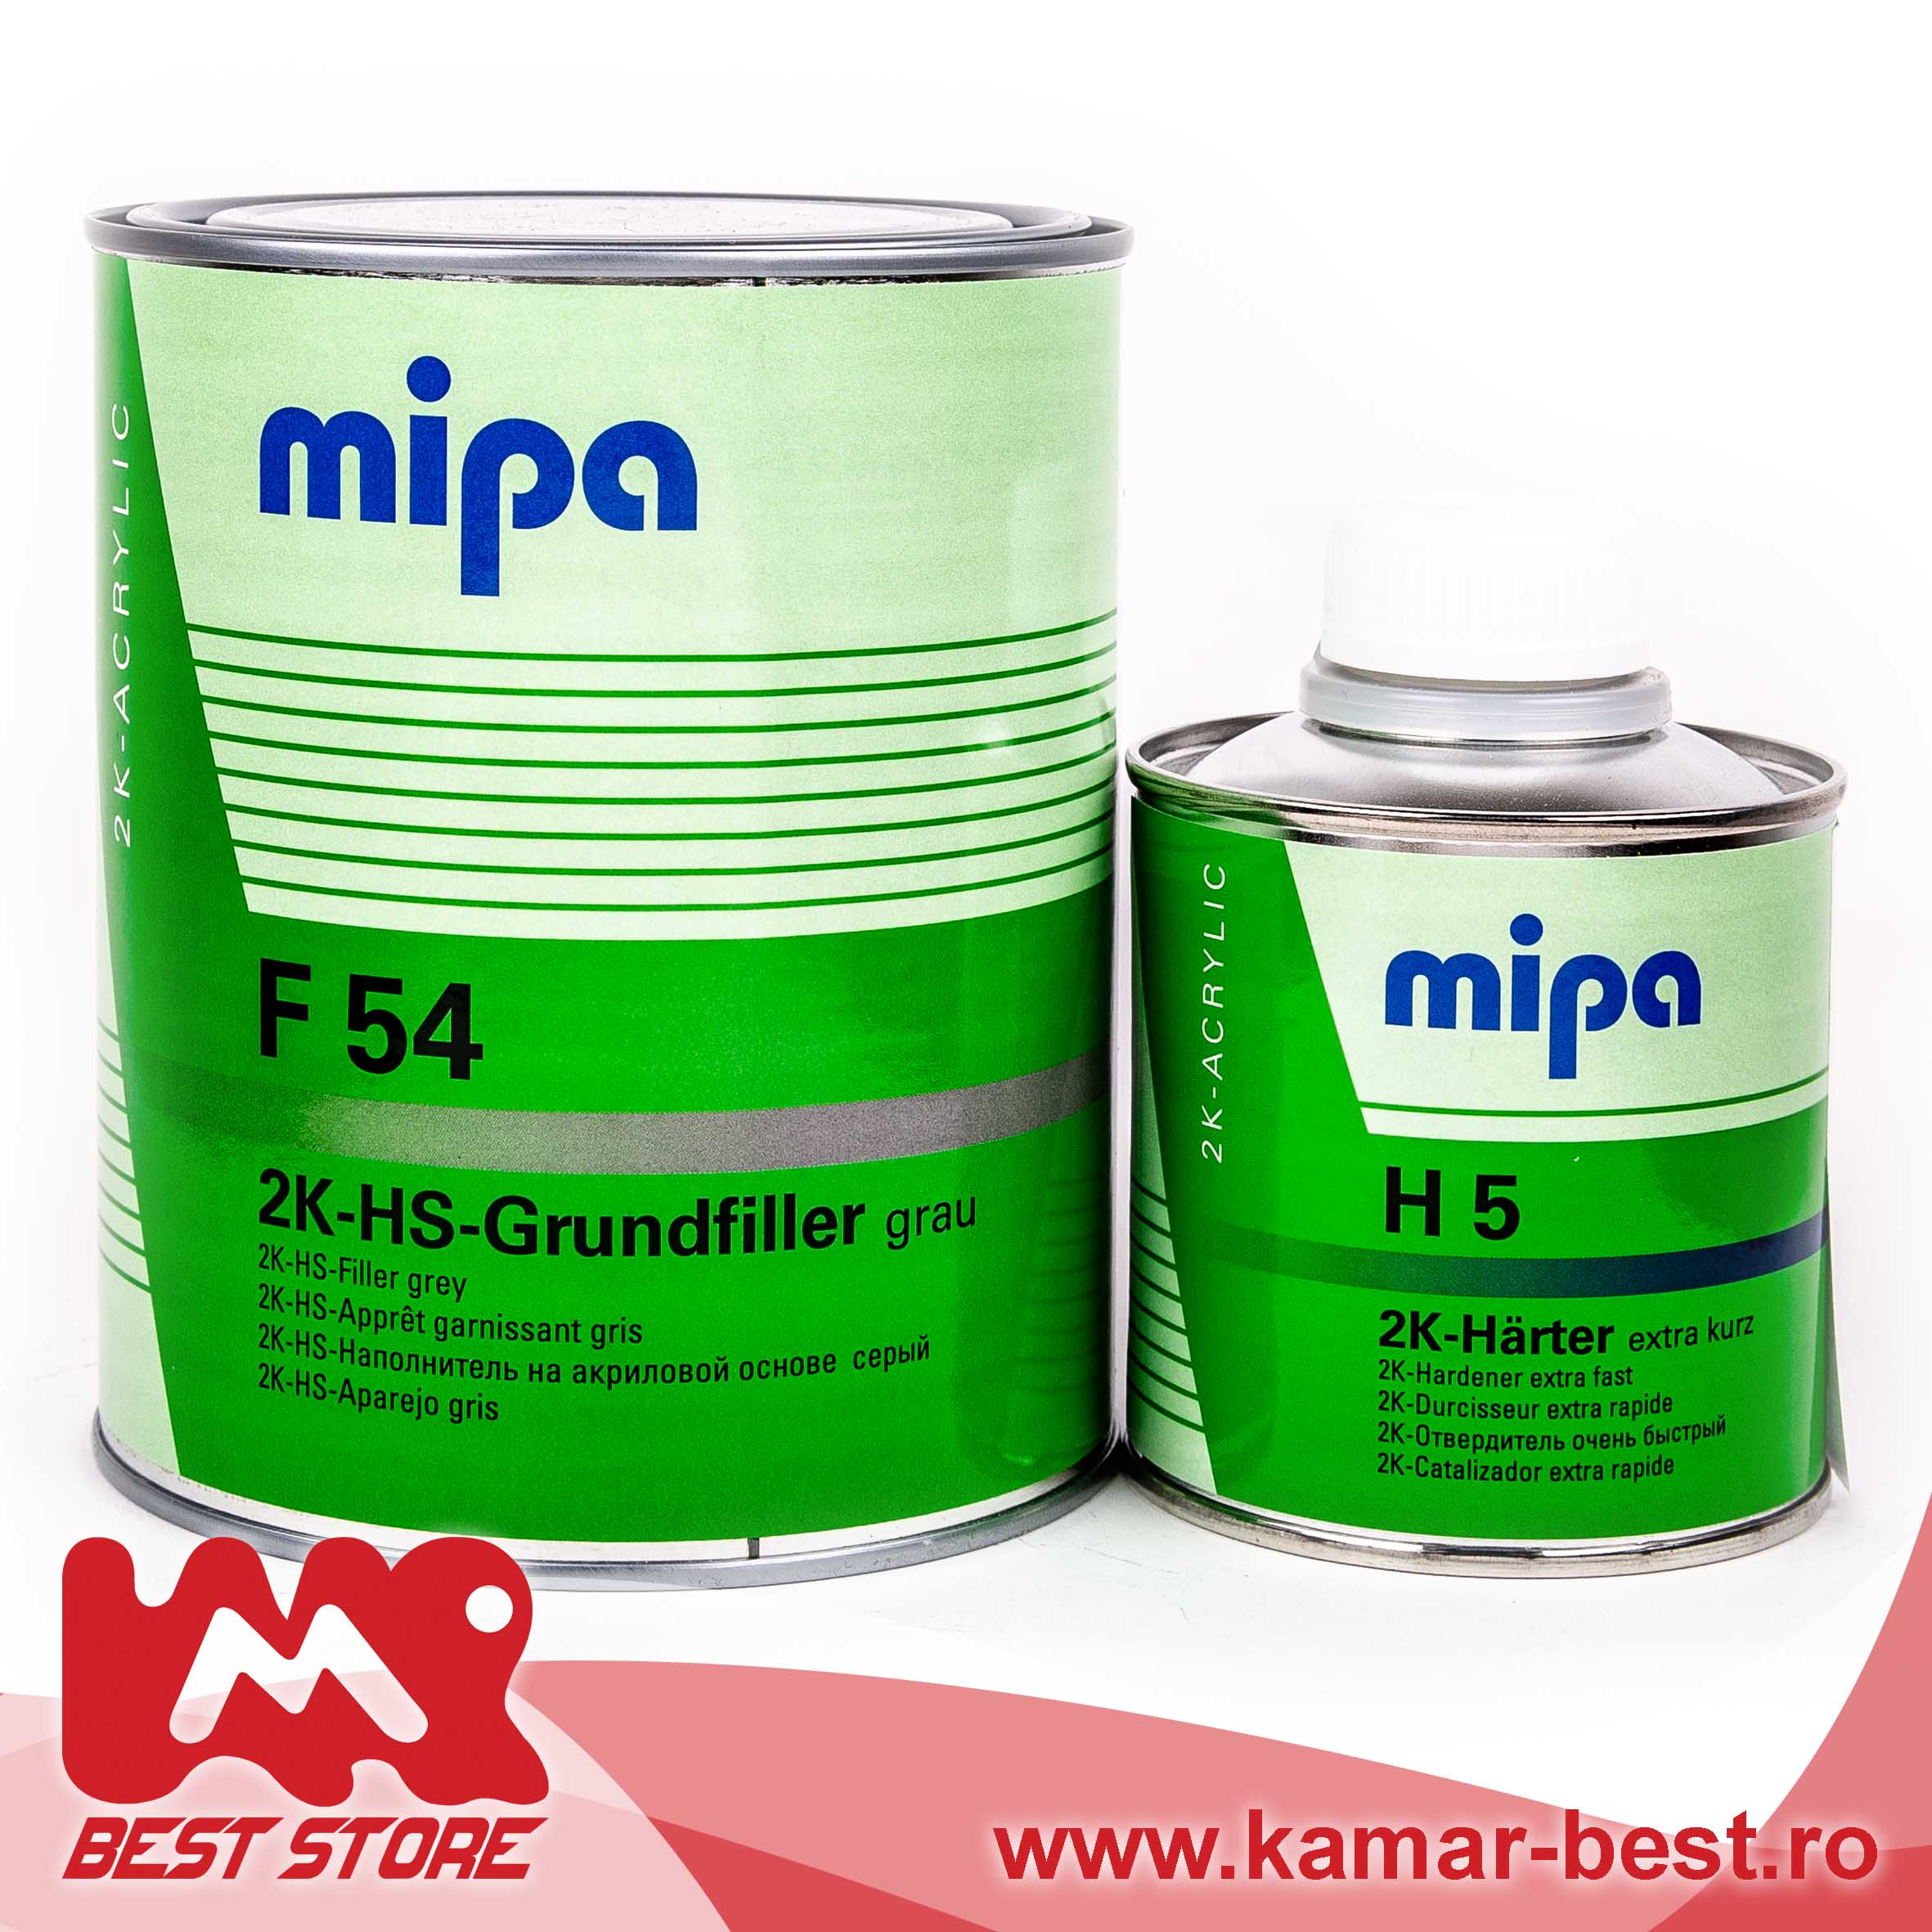 Mipa 2K-HS-Grundfiller F 54 Slefuire rapida, umplutura puternica 2K-HSfiller cu aderenta foarte buna si protectie activa impotriva coroziunii. Aplicare usoara si sigura. Raport de amestec: 4:1 Întăritor: H 5, H 10 Diluant: Mipa 2K Thinner